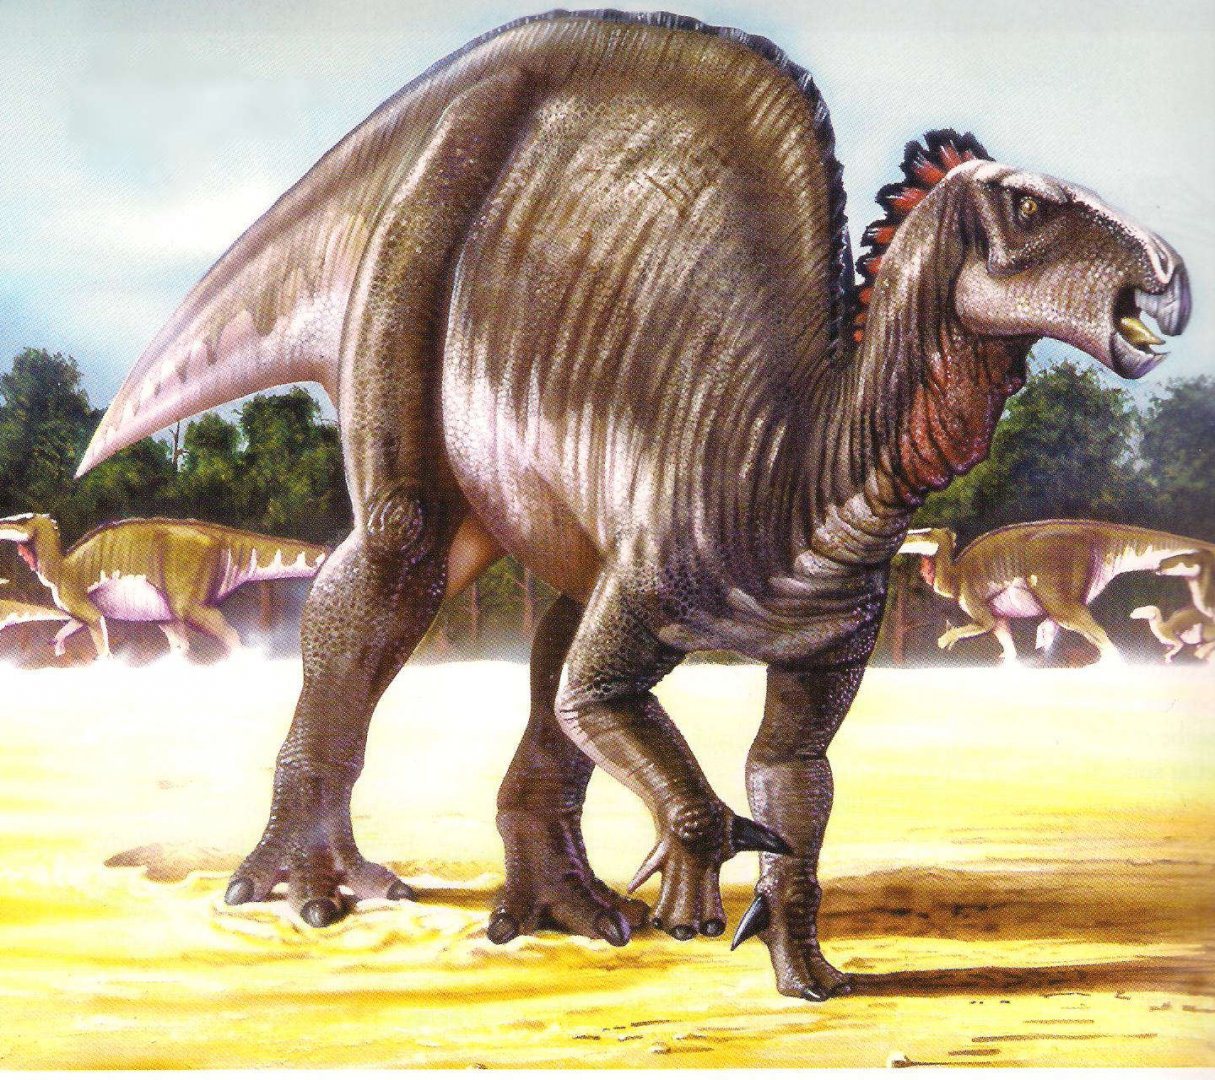 AntonĂ­n FriÄŤ jiĹľ koncem 19. stoletĂ­ vÄ›Ĺ™il, Ĺľe jĂ­m popsanĂ© fragmenty kĹ™Ă­dovĂ˝ch kostĂ­ patĹ™ily dinosaurovi z pĹ™Ă­buzenstva rodu Iguanodon (na obrĂˇzku). SouÄŤasnĂ˝ vĂ˝zkum mu dĂˇvĂˇ zapravdu, i kdyĹľ o totoĹľnosti moĹľnĂ˝ch dinosaurĹŻ od 